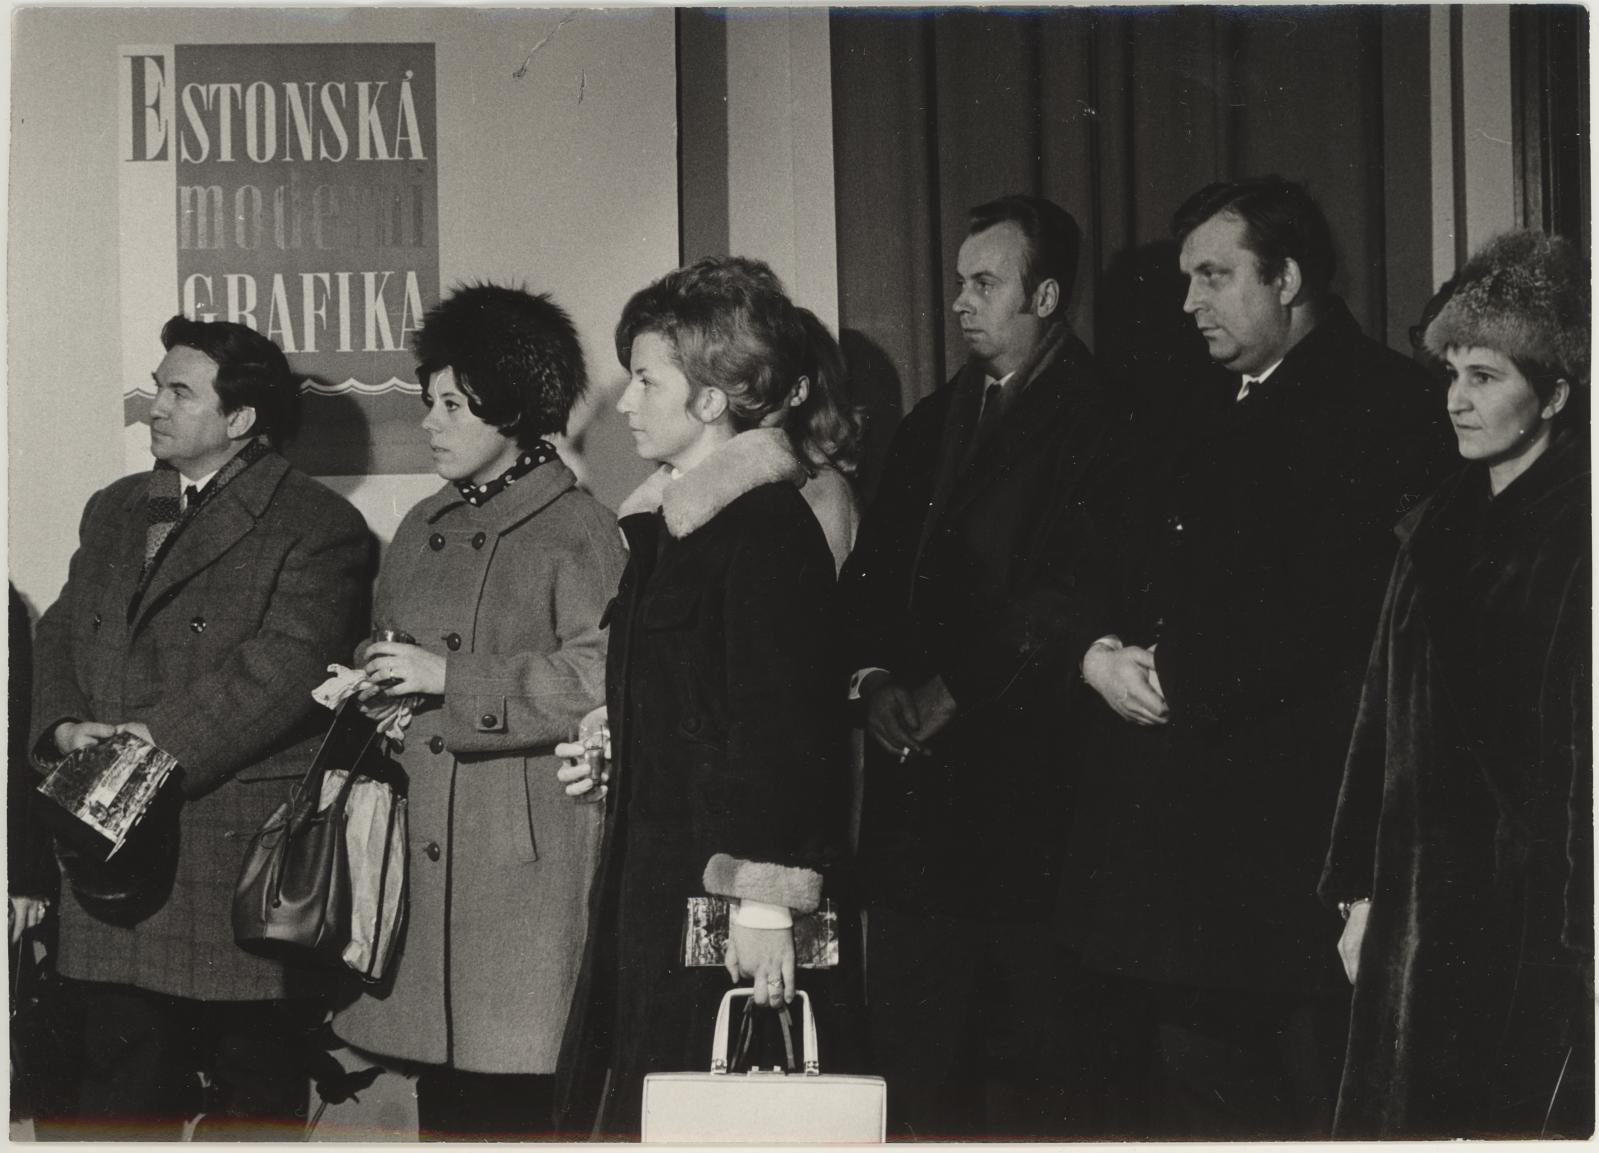 Eesti nõukogude graafika näituse avamine Prahas 8. jaan. 1970. Külalisi avamiselt.